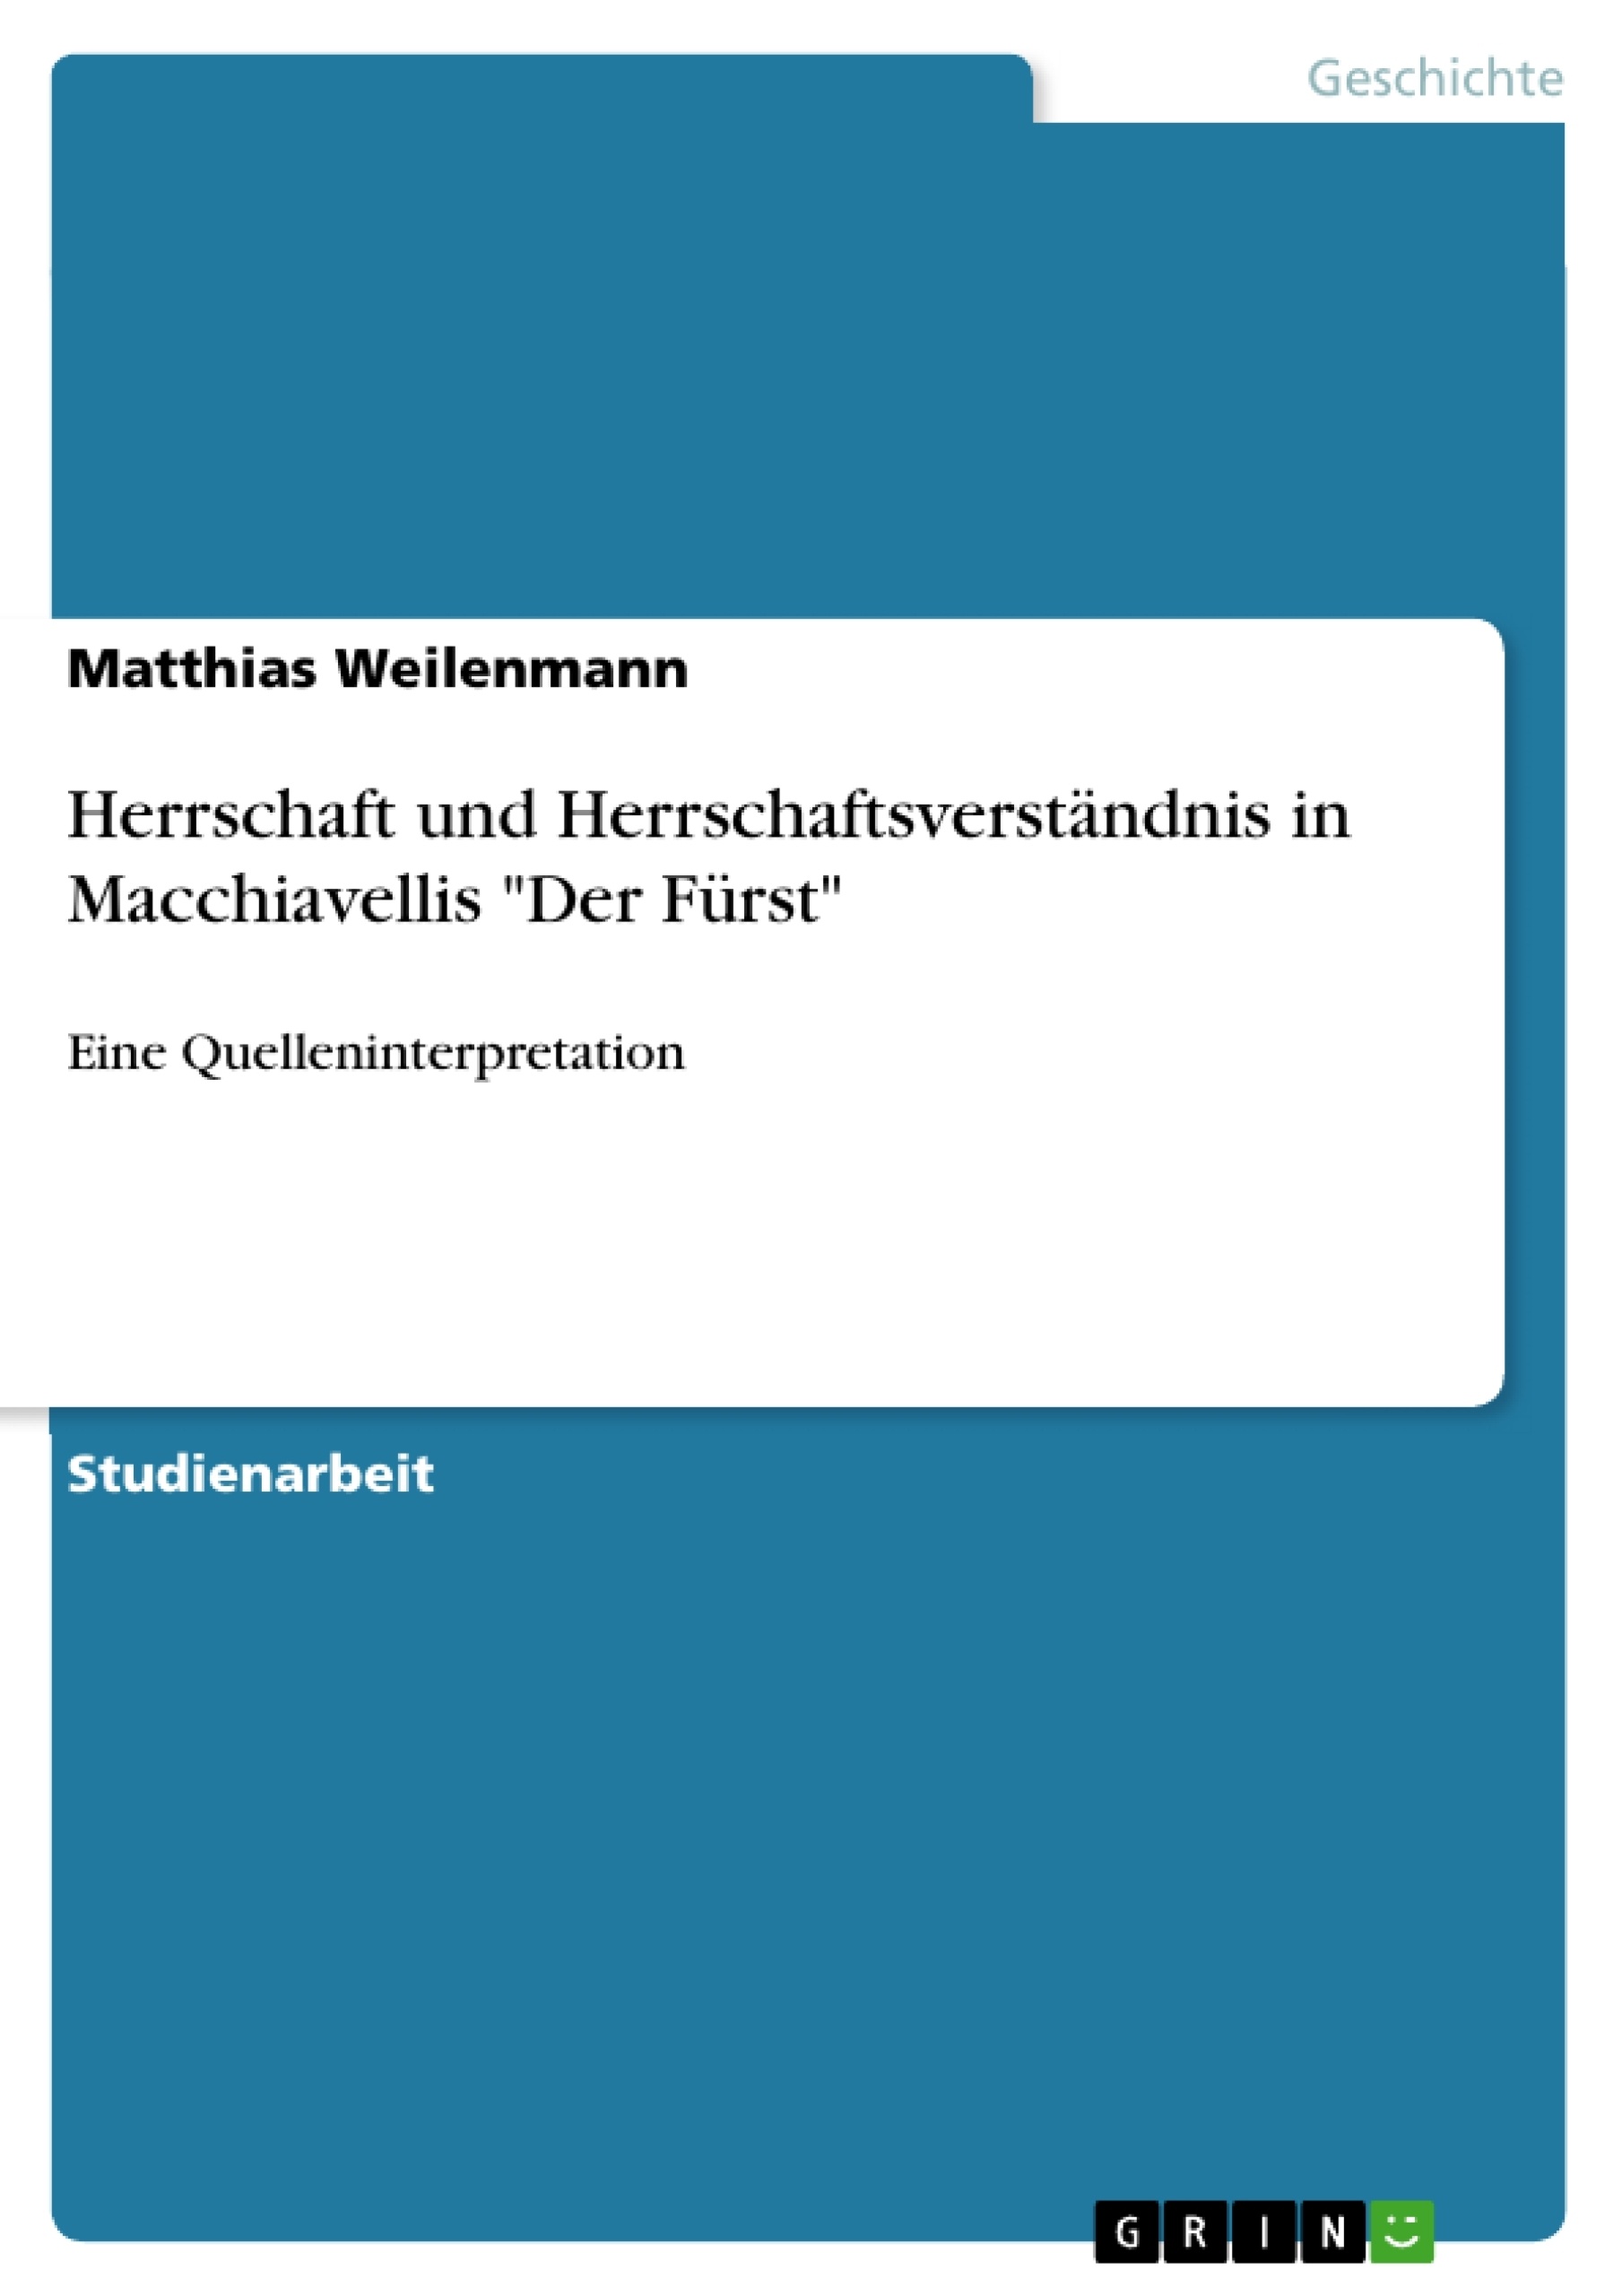 Título: Herrschaft und Herrschaftsverständnis in Macchiavellis "Der Fürst"